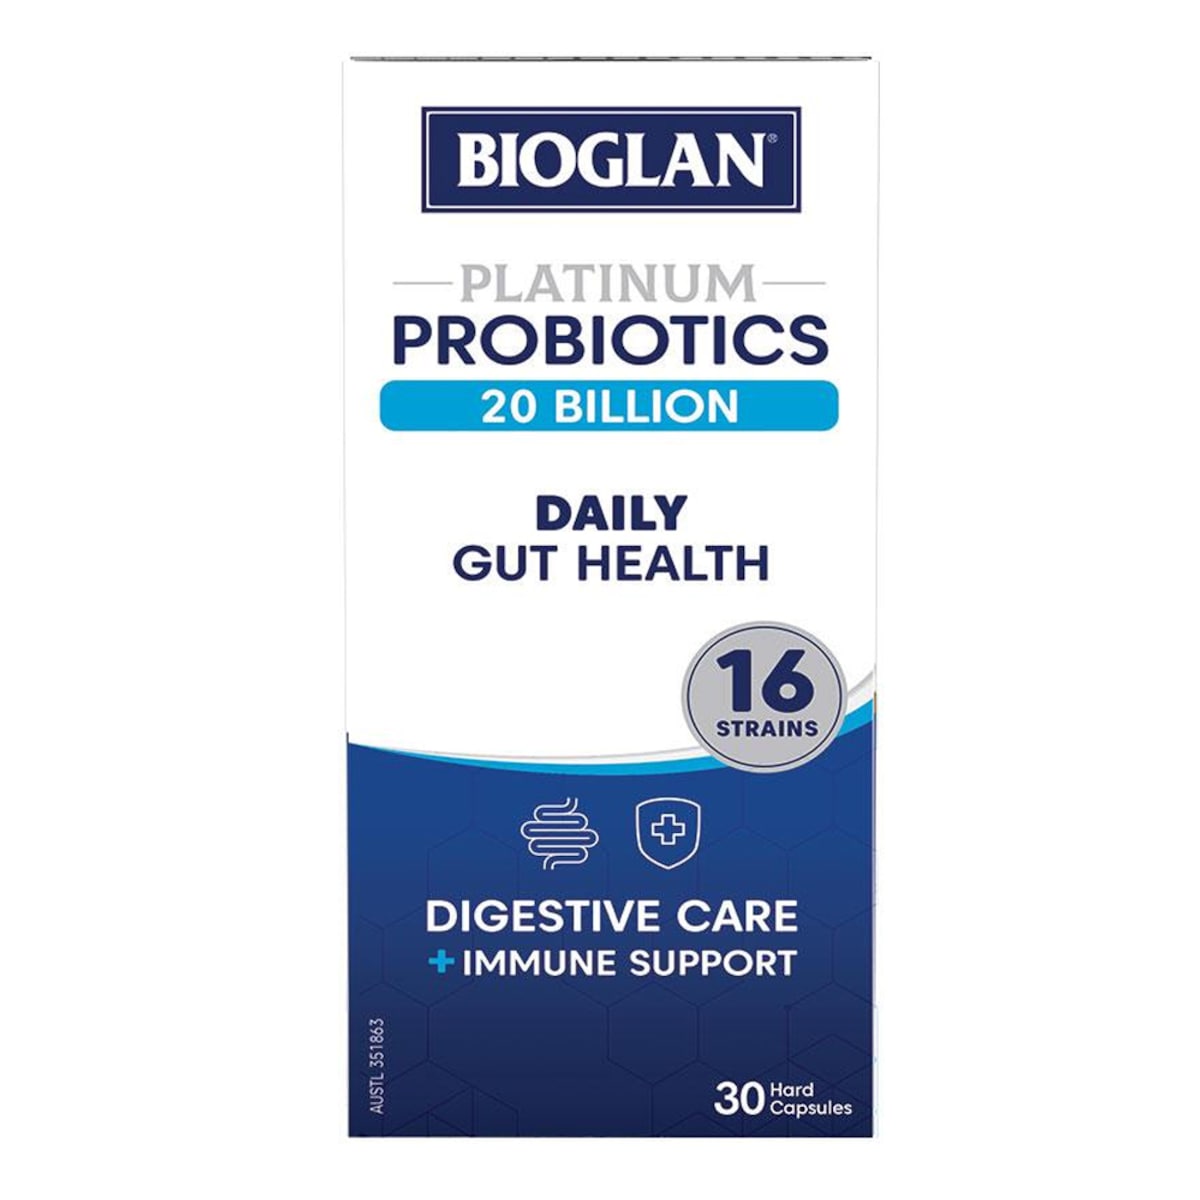 Bioglan Platinum Probiotics 20 Billion Daily Gut Health 30 Capsules Australia